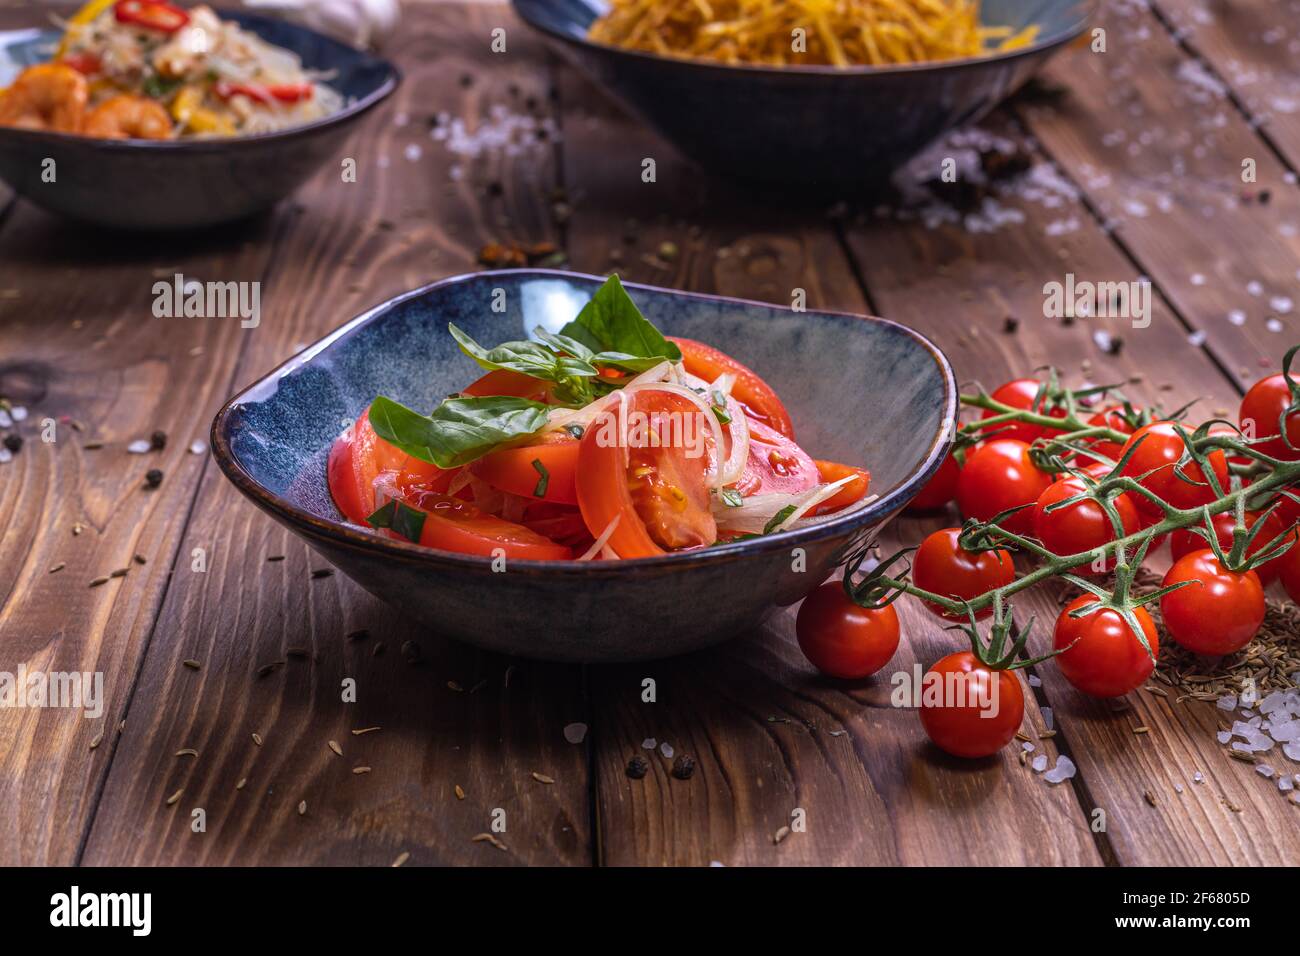 Émincez les tomates avec les oignons dans une assiette sur fond de bois brun, décorée de tomates cerises, de gros sel et de petits pois au poivre. Le concept de la santé Banque D'Images